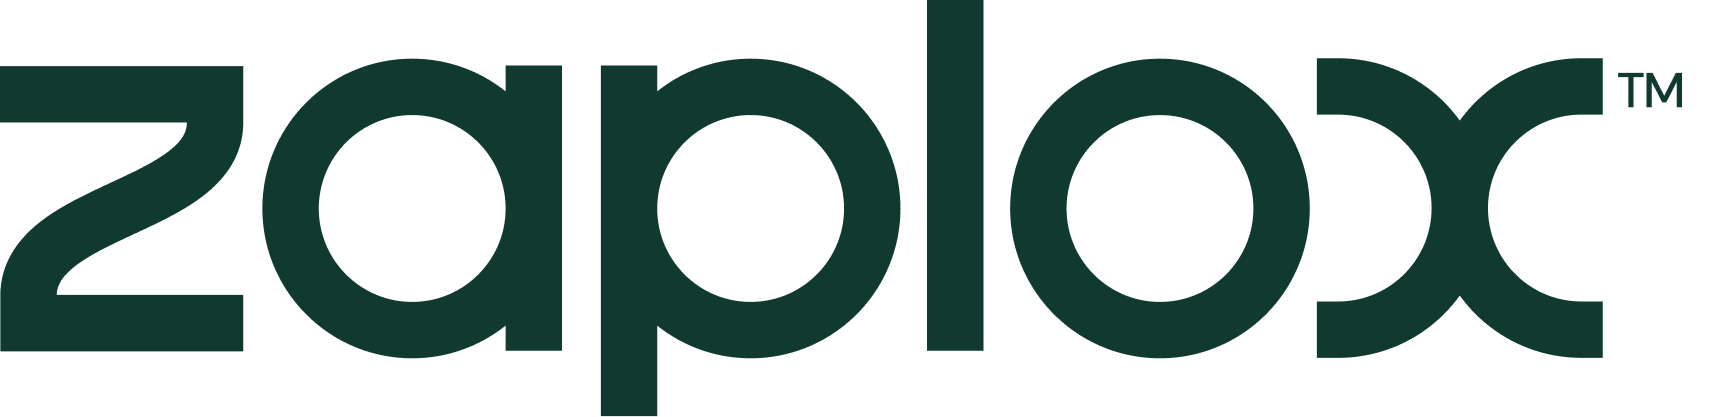 Zaplox logo